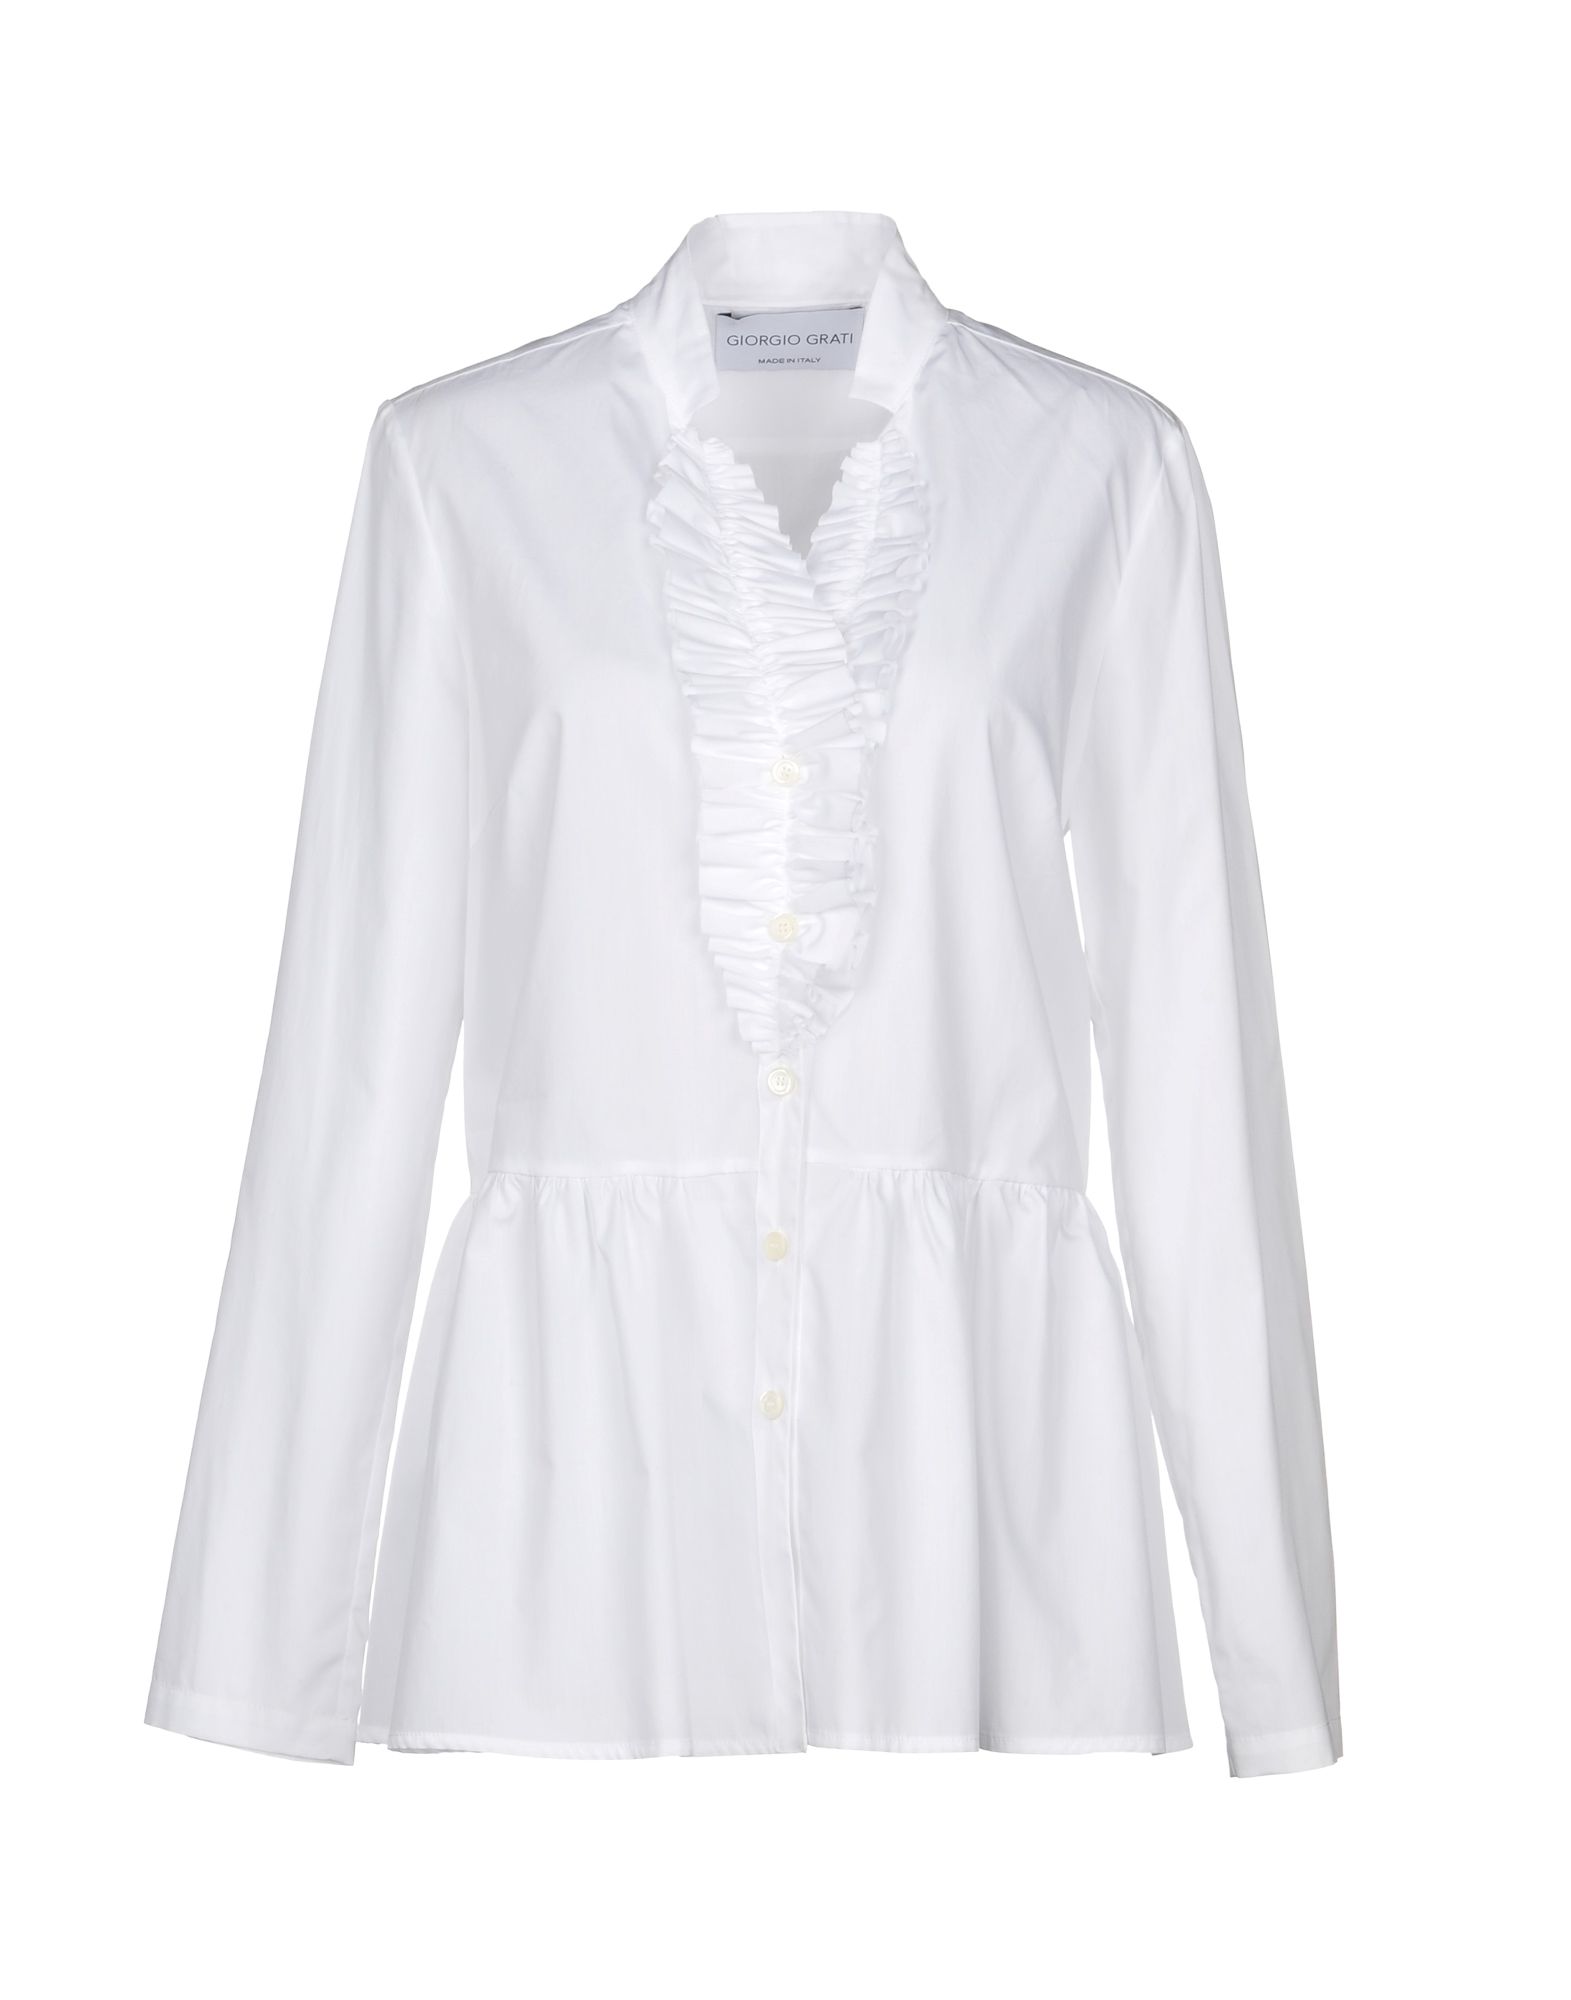 Giorgio Grati Solid Colour Shirts & Blouses In White